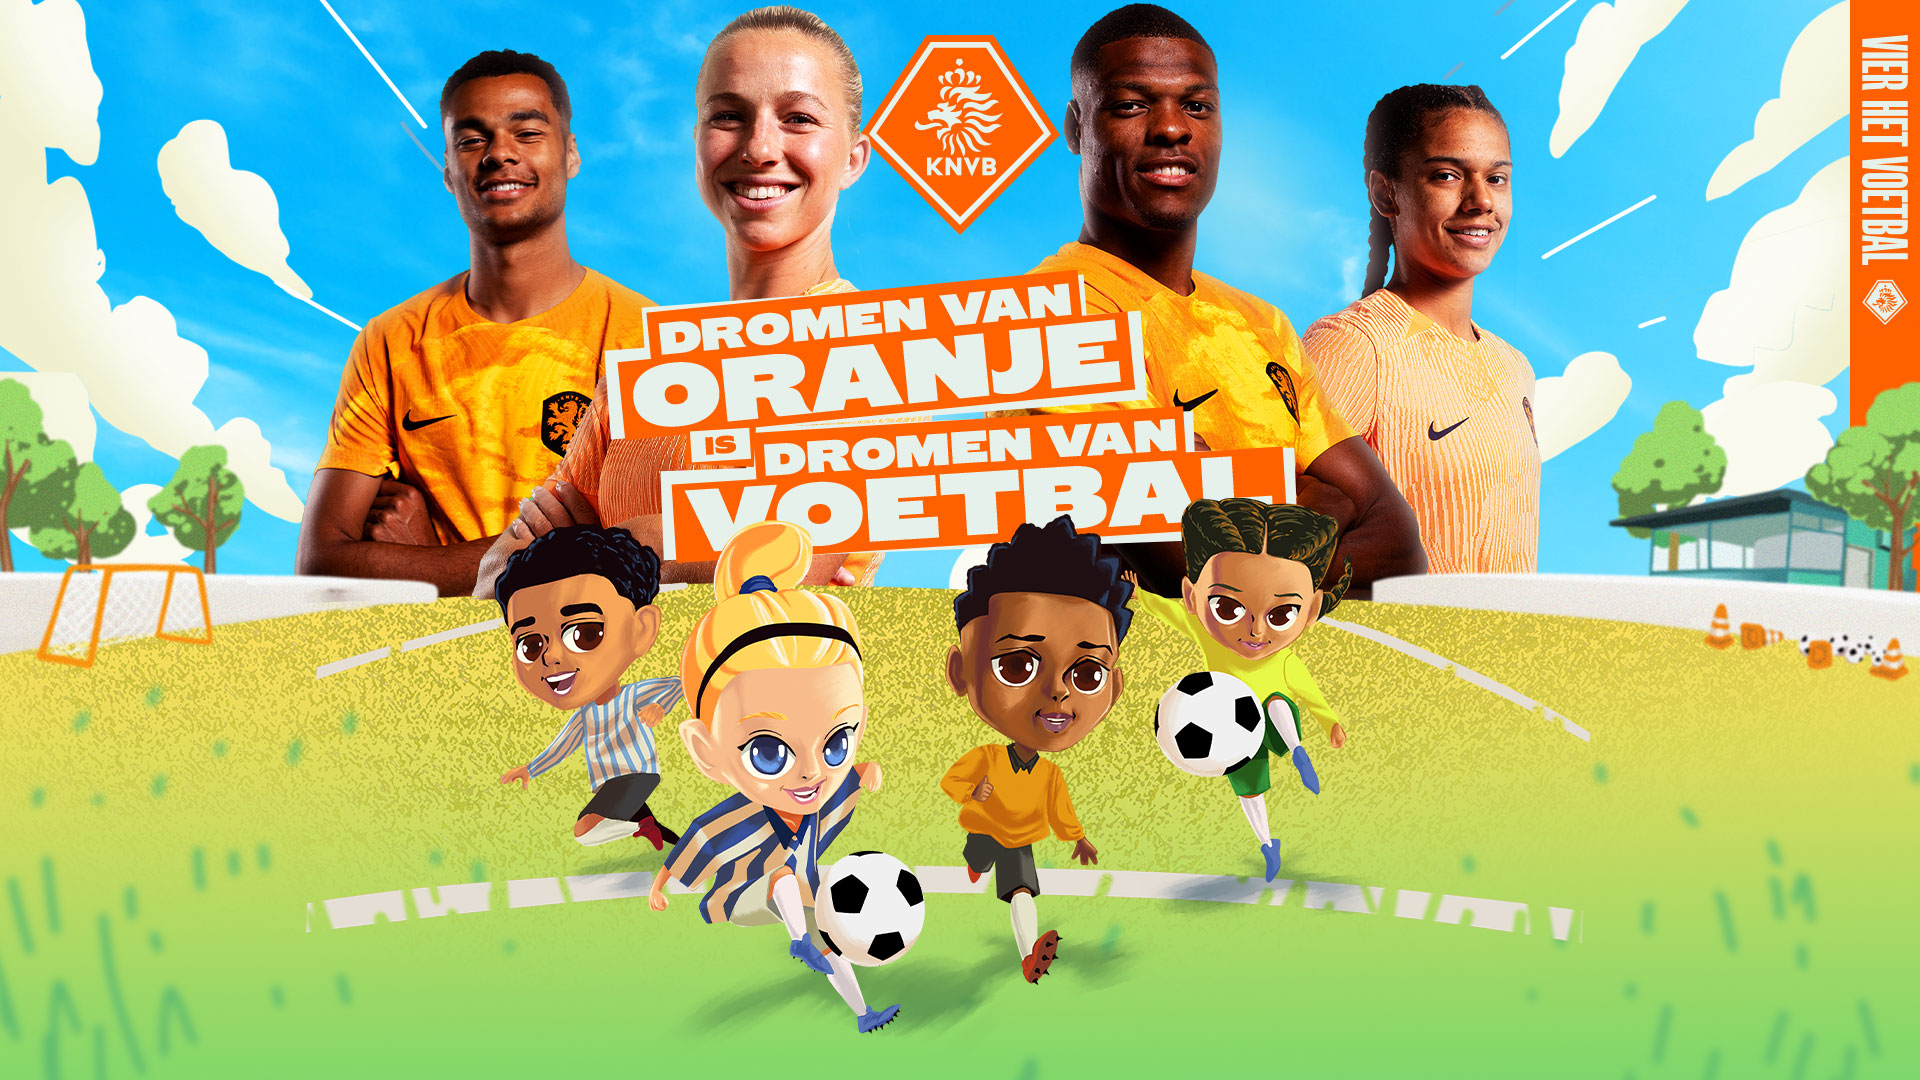 Nieuwe instroomcampagne: Dromen van Oranje is Dromen van Voetbal